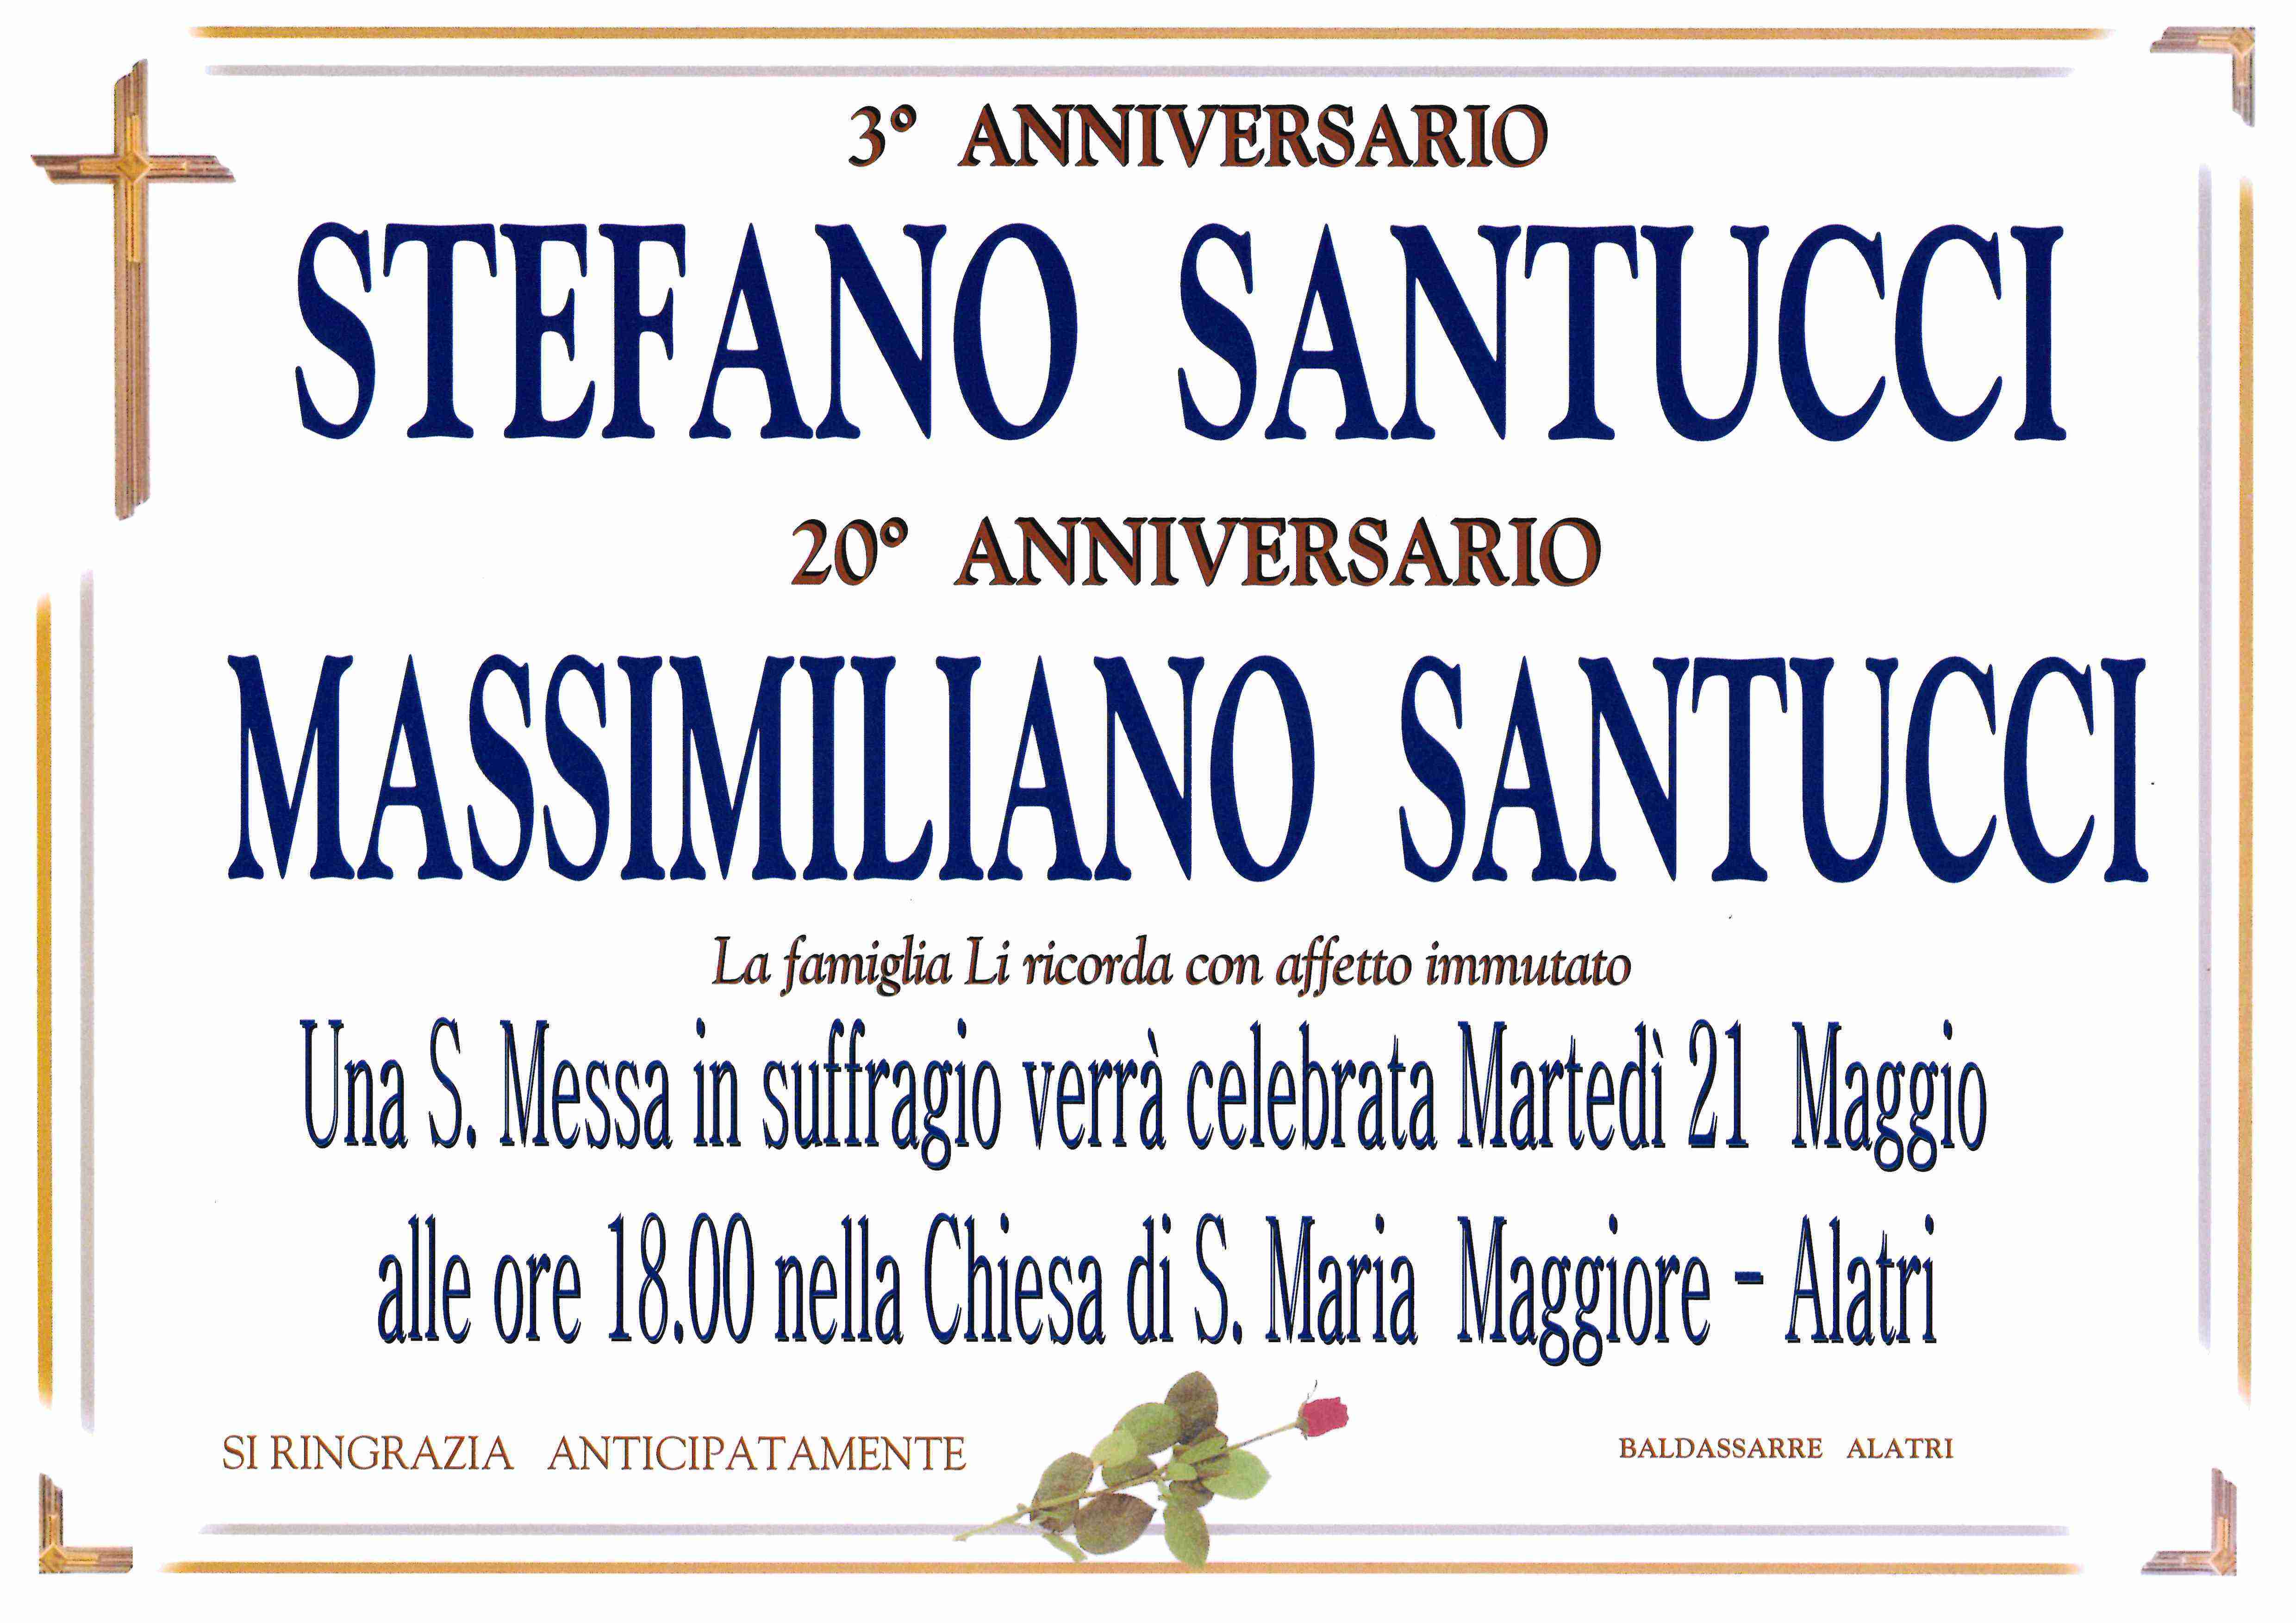 Stefano Santucci e Massimiliano Santucci